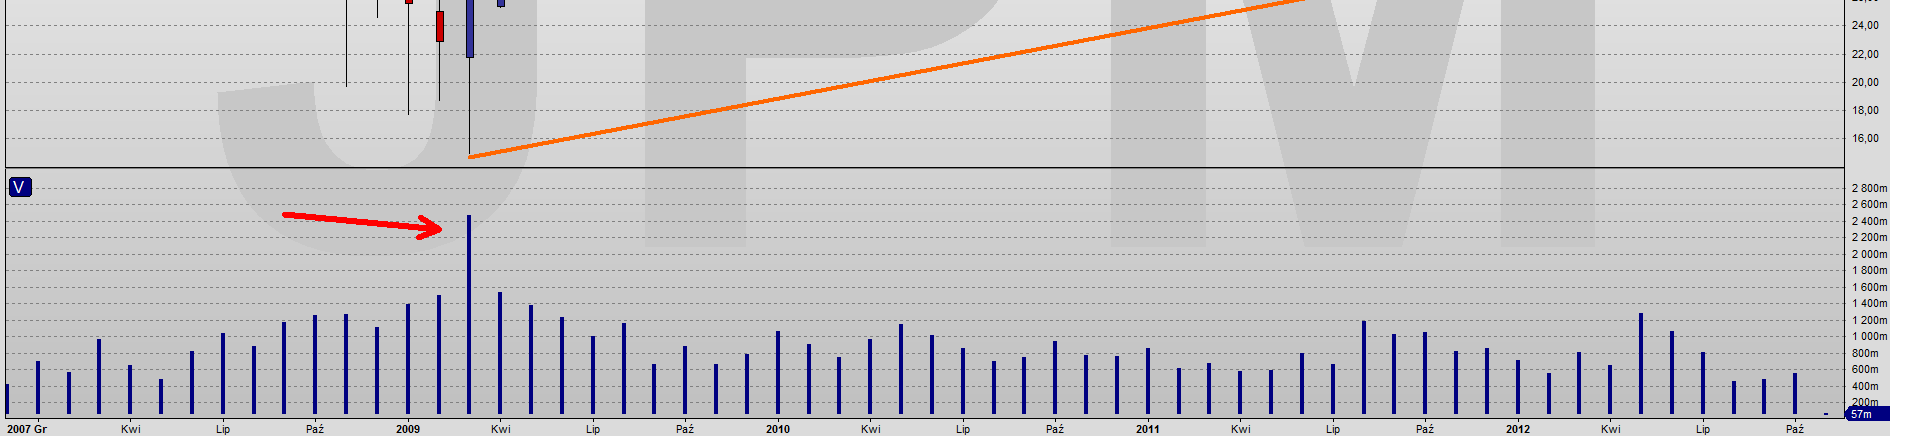 Akcje JP MORGAN CHASE Wykres tygodniowy Trend wzrostowy Sygnał odwrócenia 37.00 Wykres miesięczny Trend wzrostowy Sygnał odwrócenia 31.